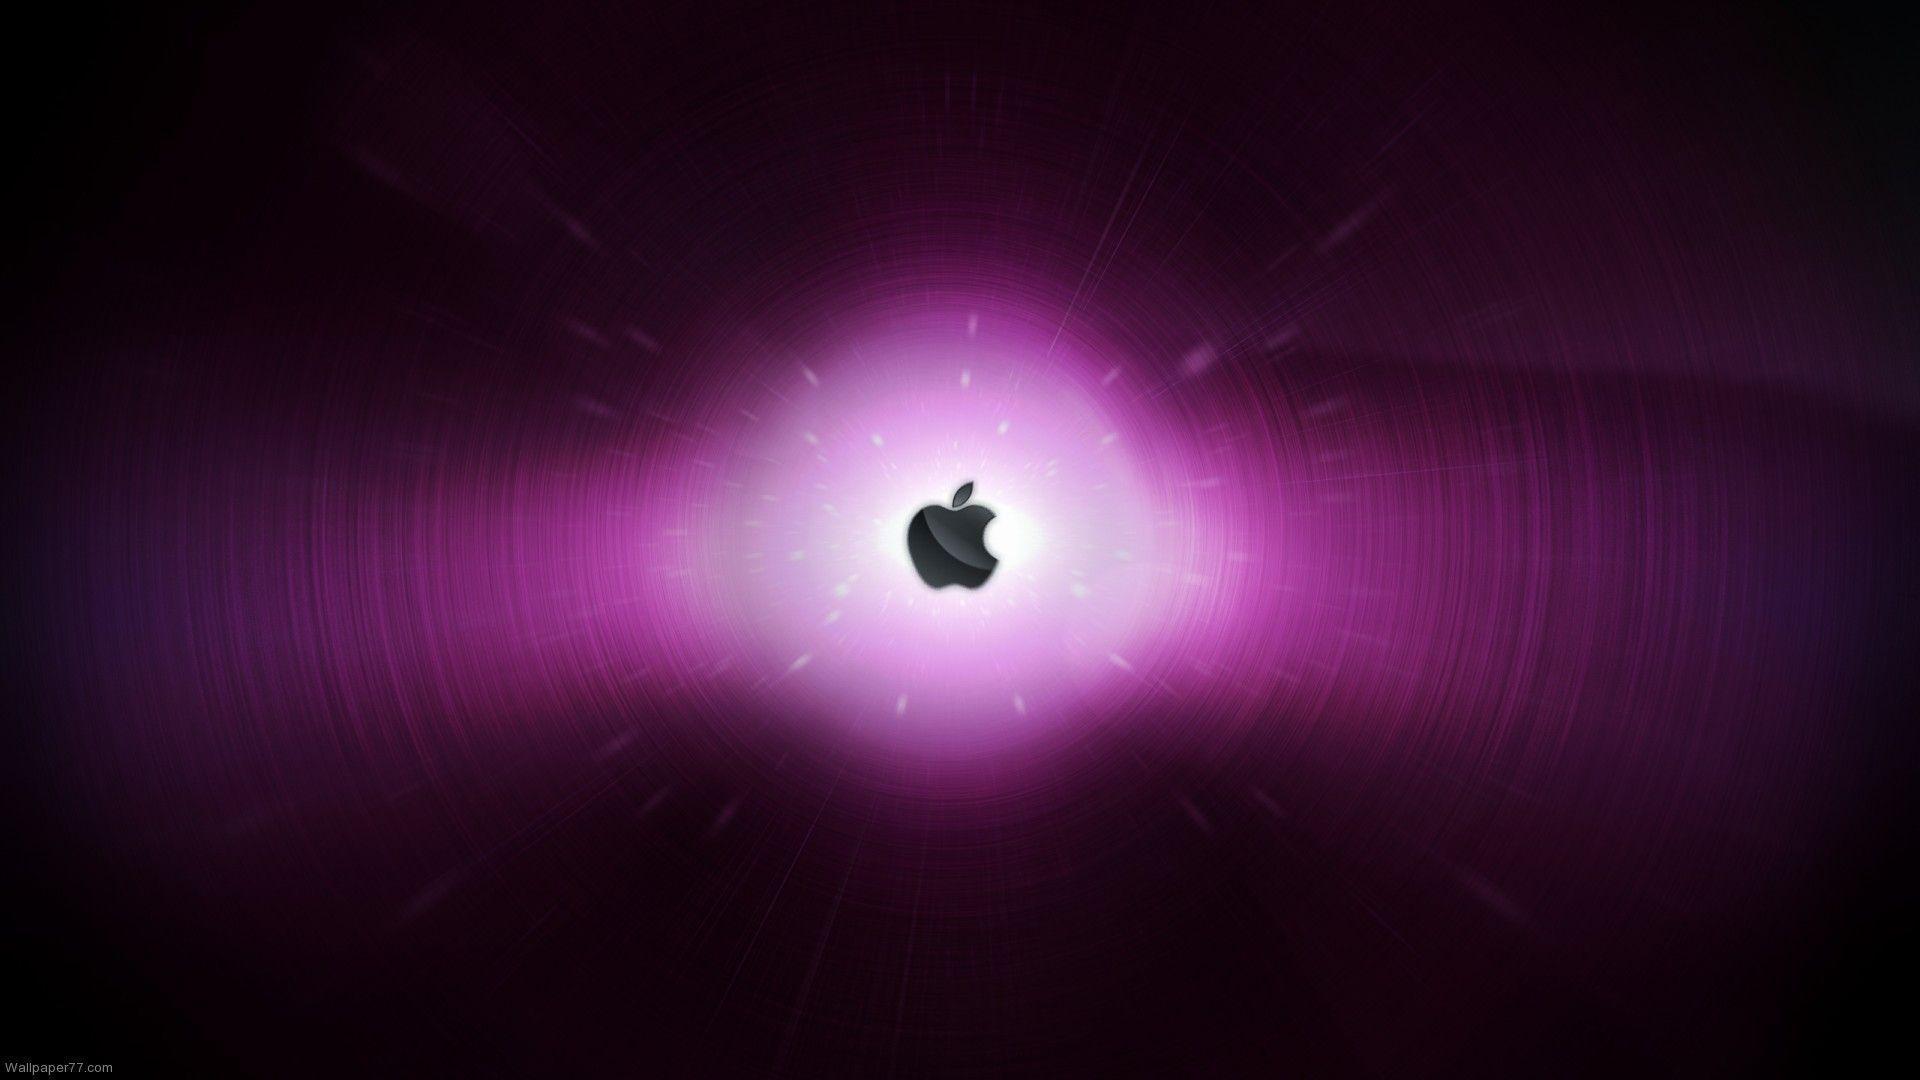 Apple in Purple, 1920x1080 pixels, Wallpaper tagged Apple